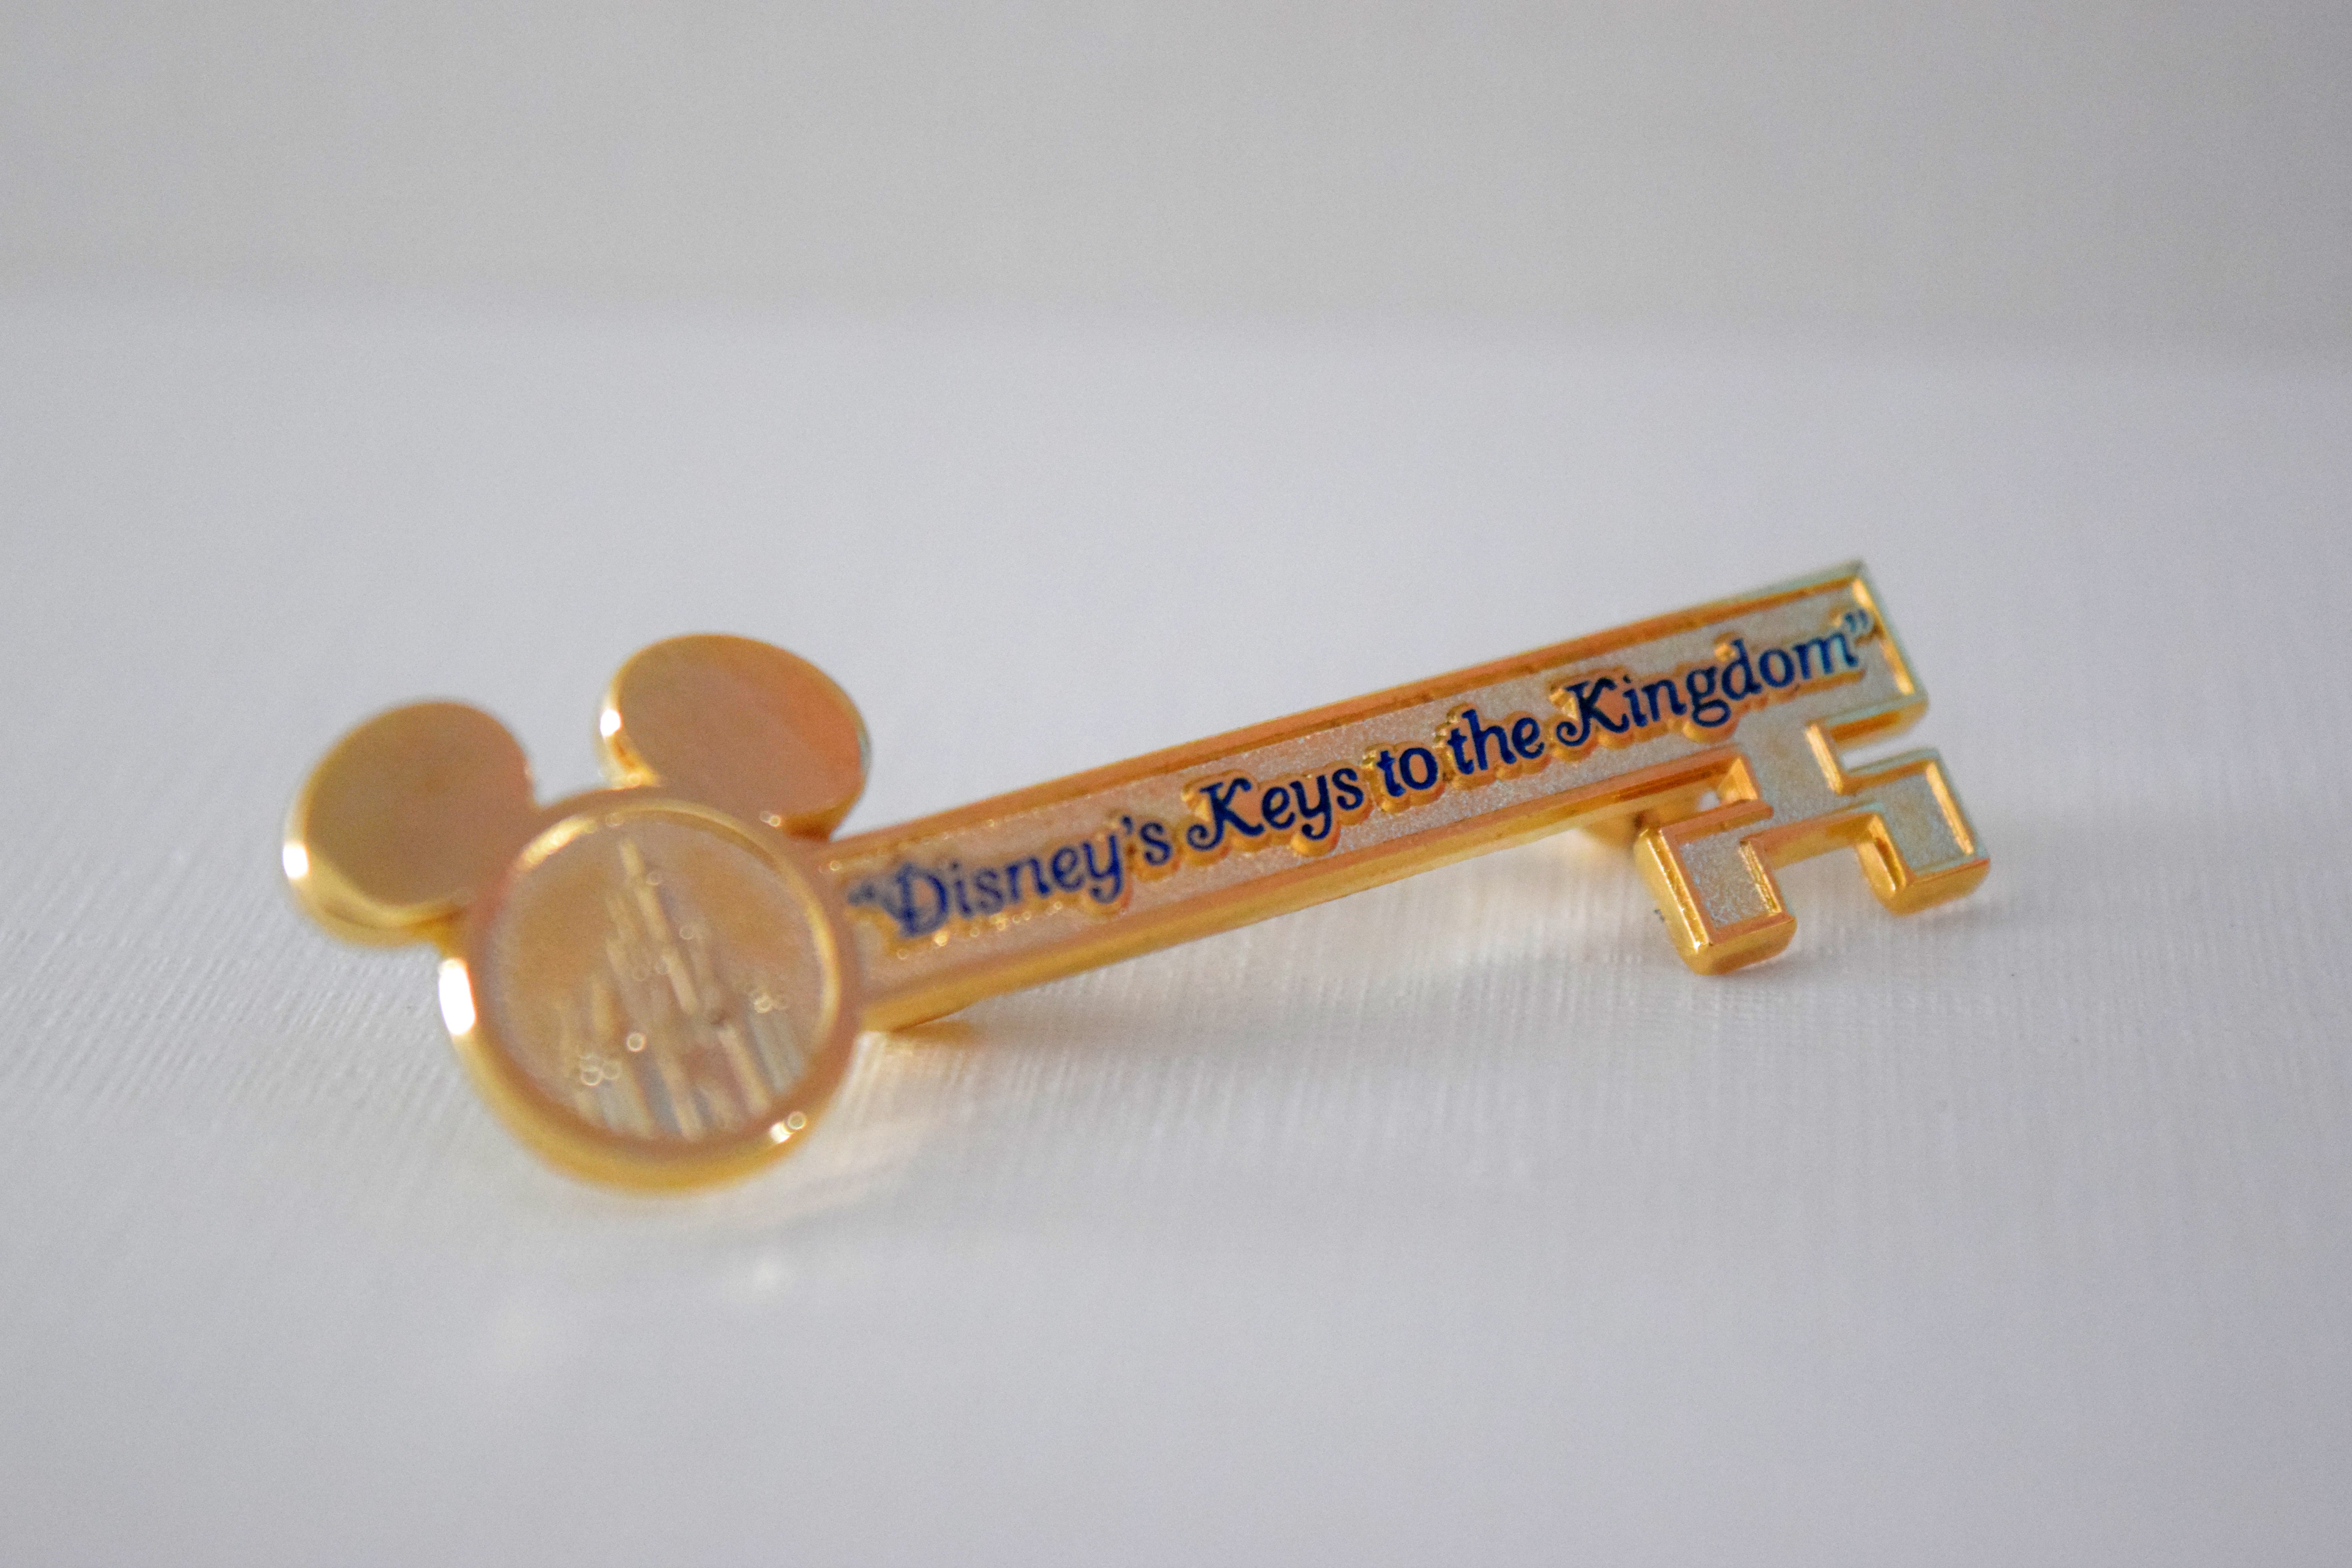 Foto da lembrancinha do Keys to the Kingdom, uma chave dourada com orelhas de Mickey e o nome do tour em azul 